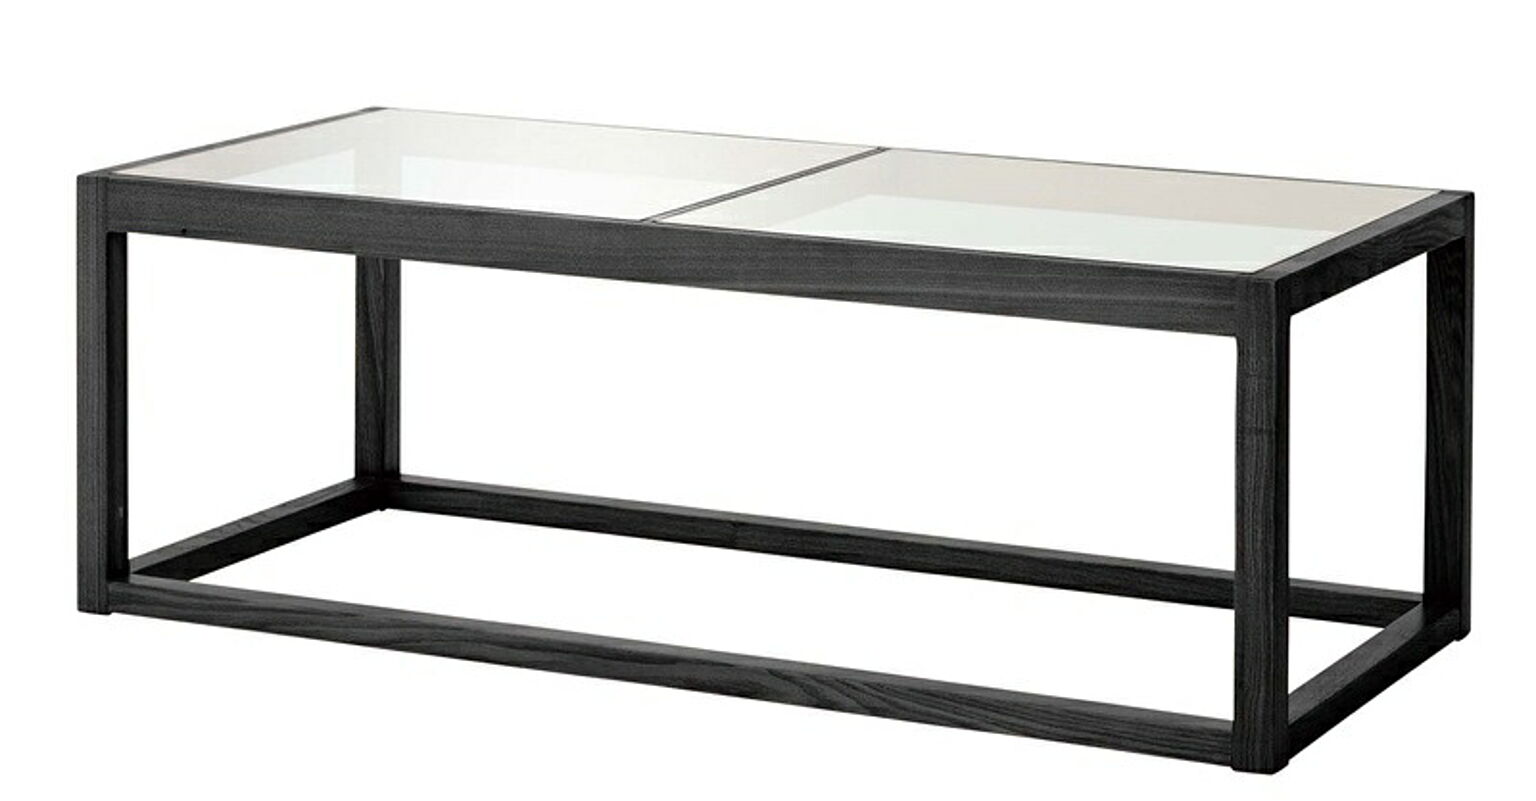 ガラステーブル W110×D50×H38 ブラック リビングテーブル ガラステーブル センターテーブル ローテーブル テーブル 天然木 幅110cm ナチュラル ブラック おしゃれ 北欧 モダン 